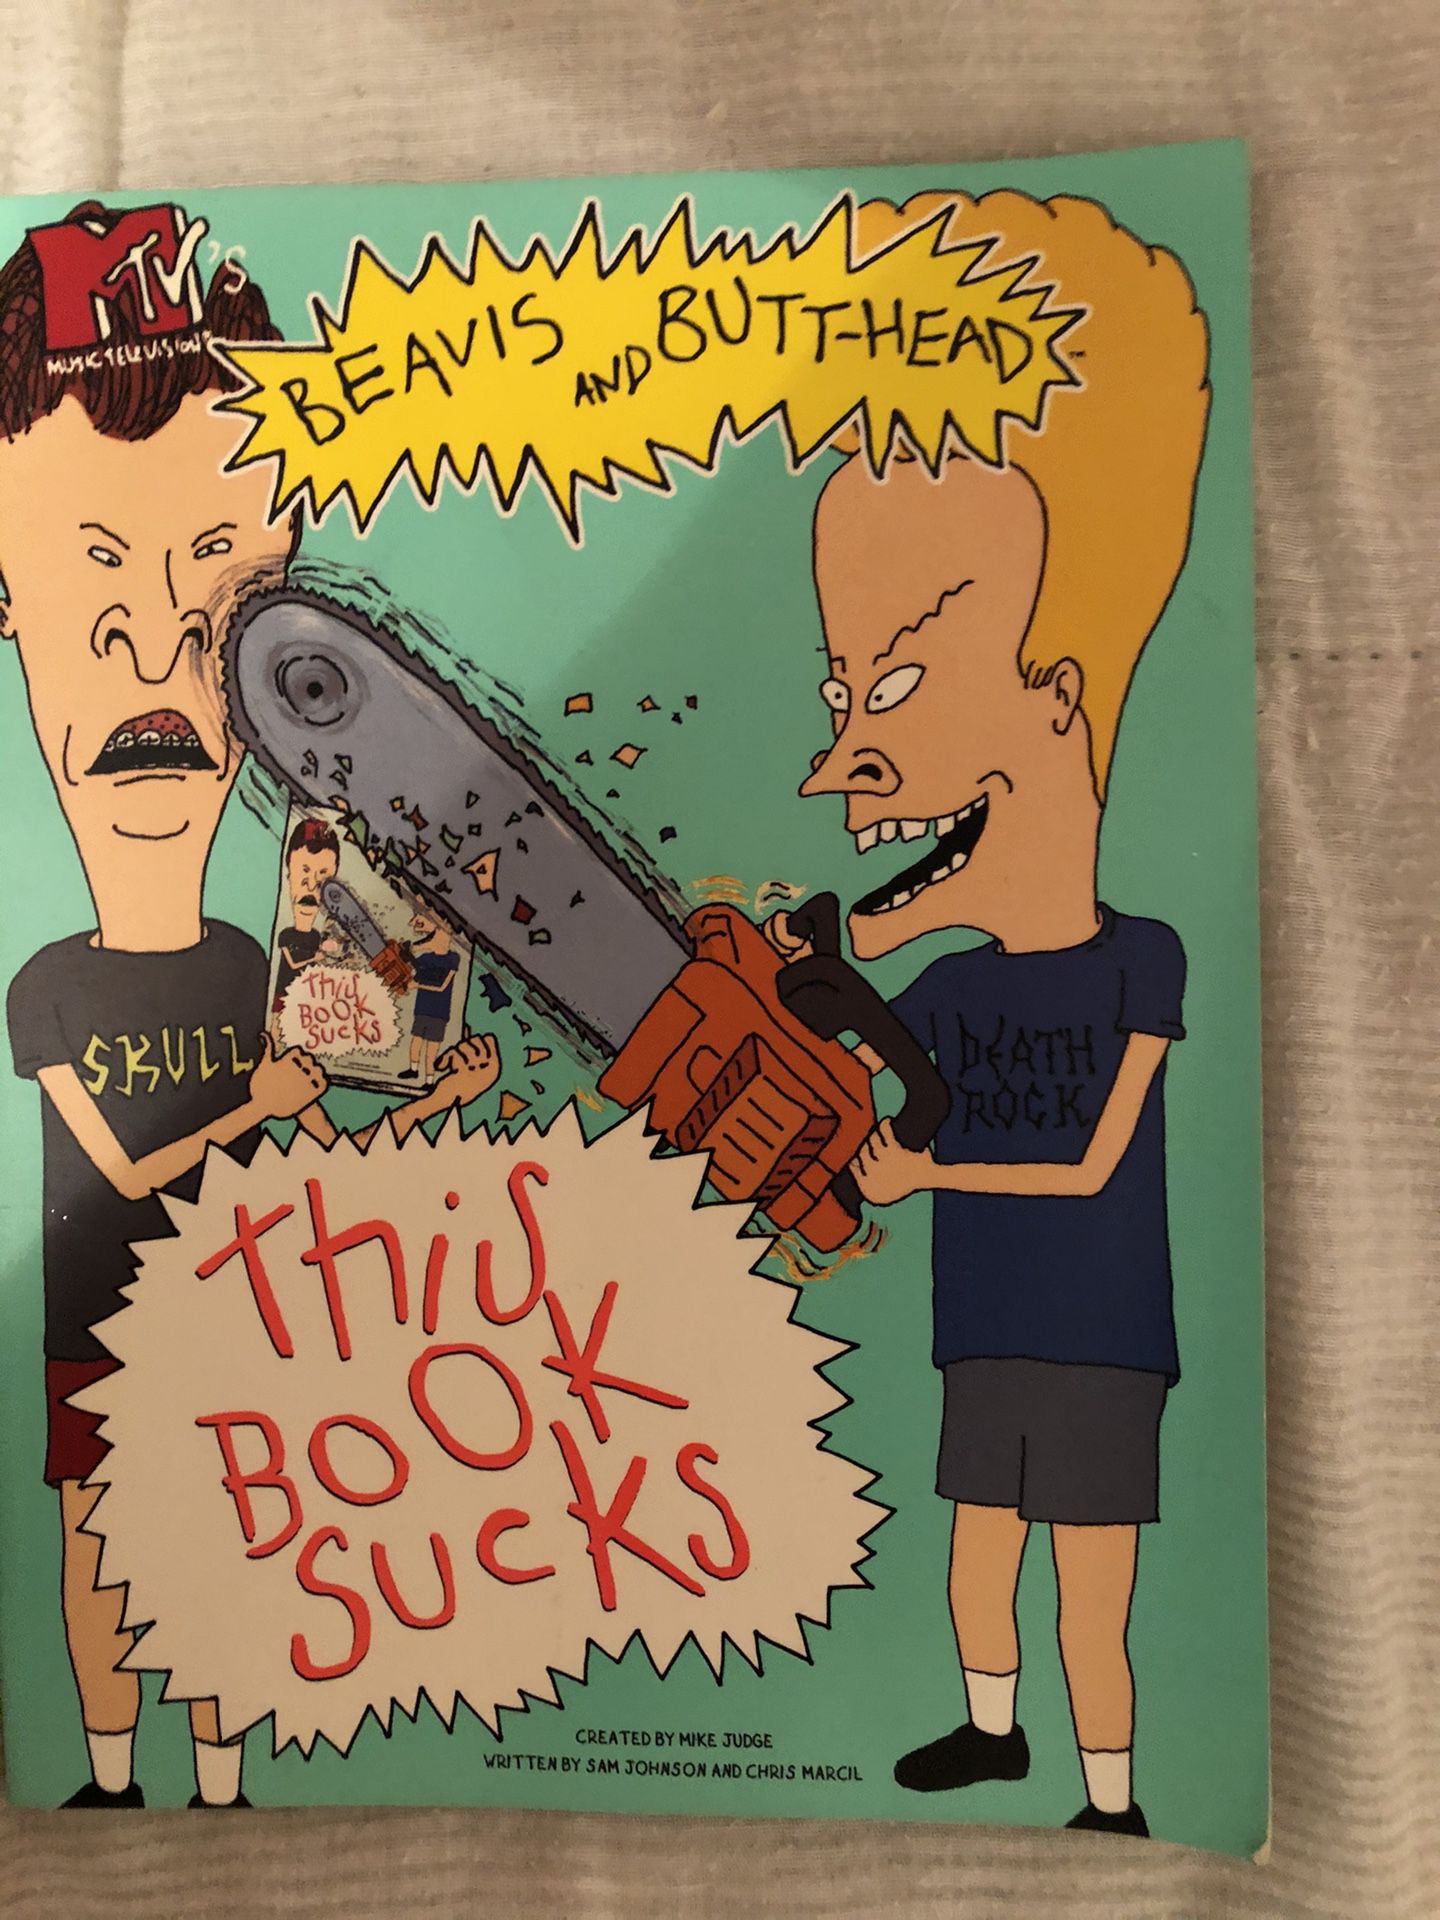 Beavis n Butthead “this book sucks” book